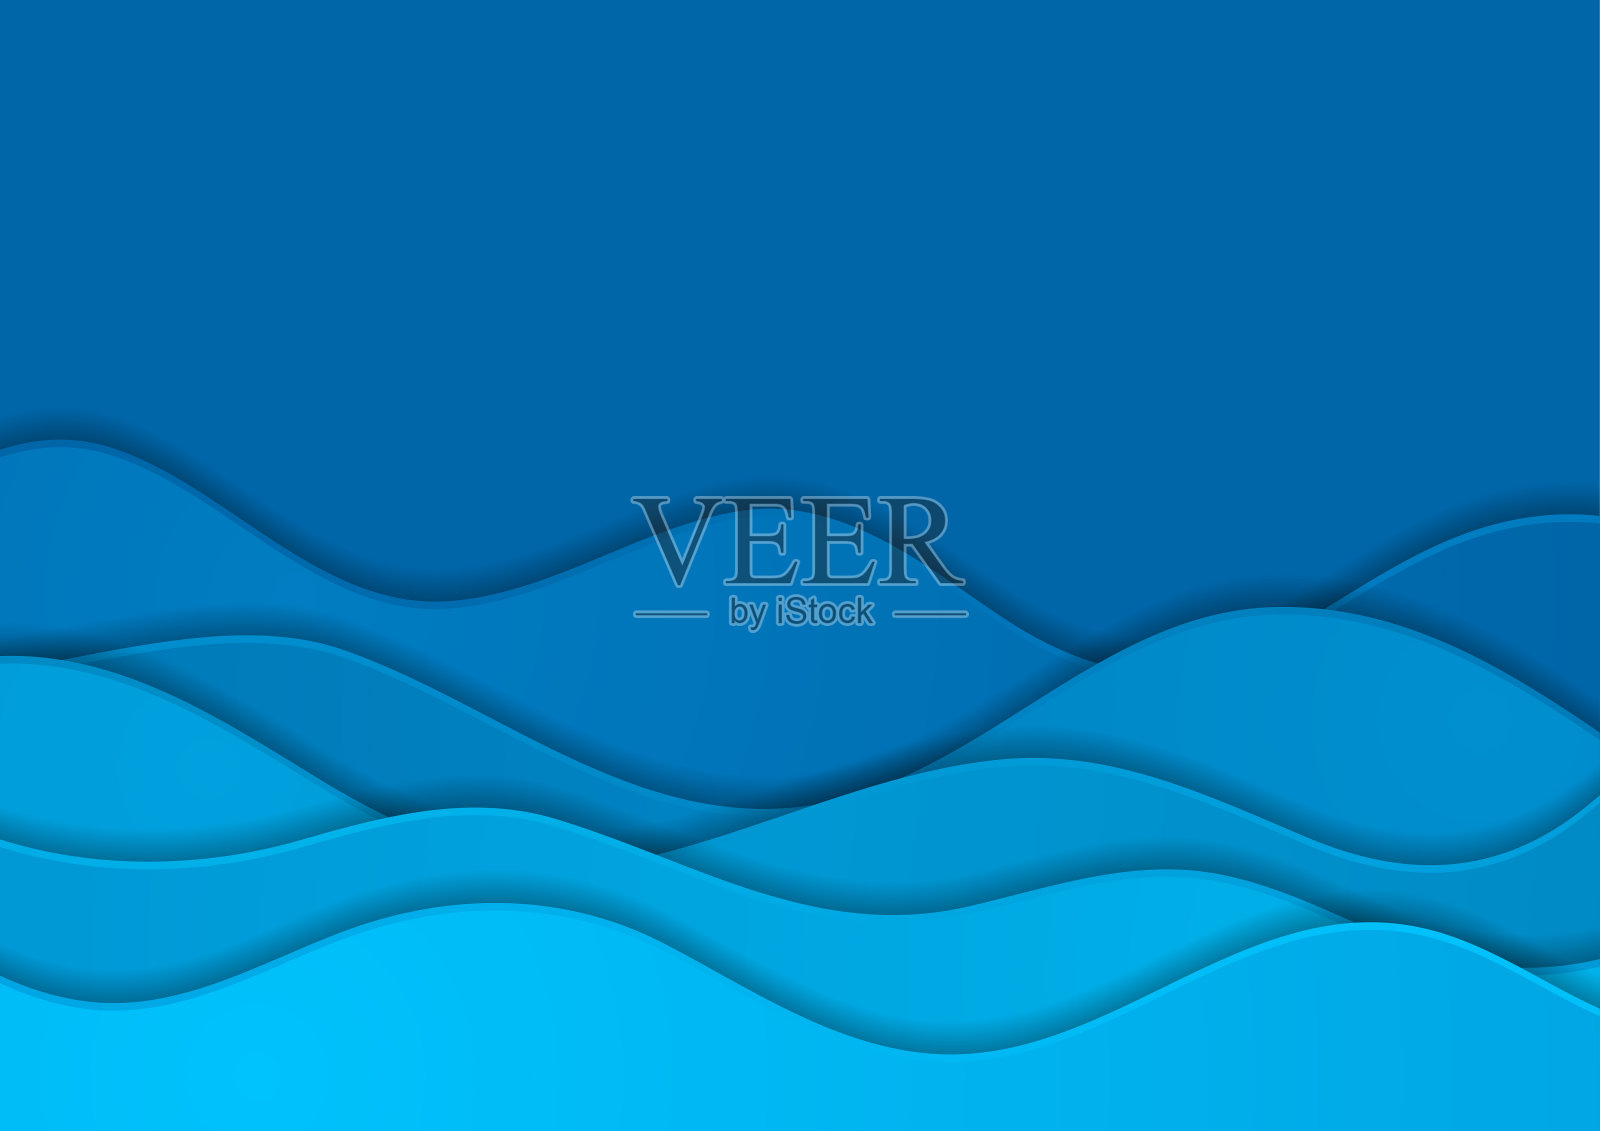 明亮的蓝色公司波浪抽象背景插画图片素材